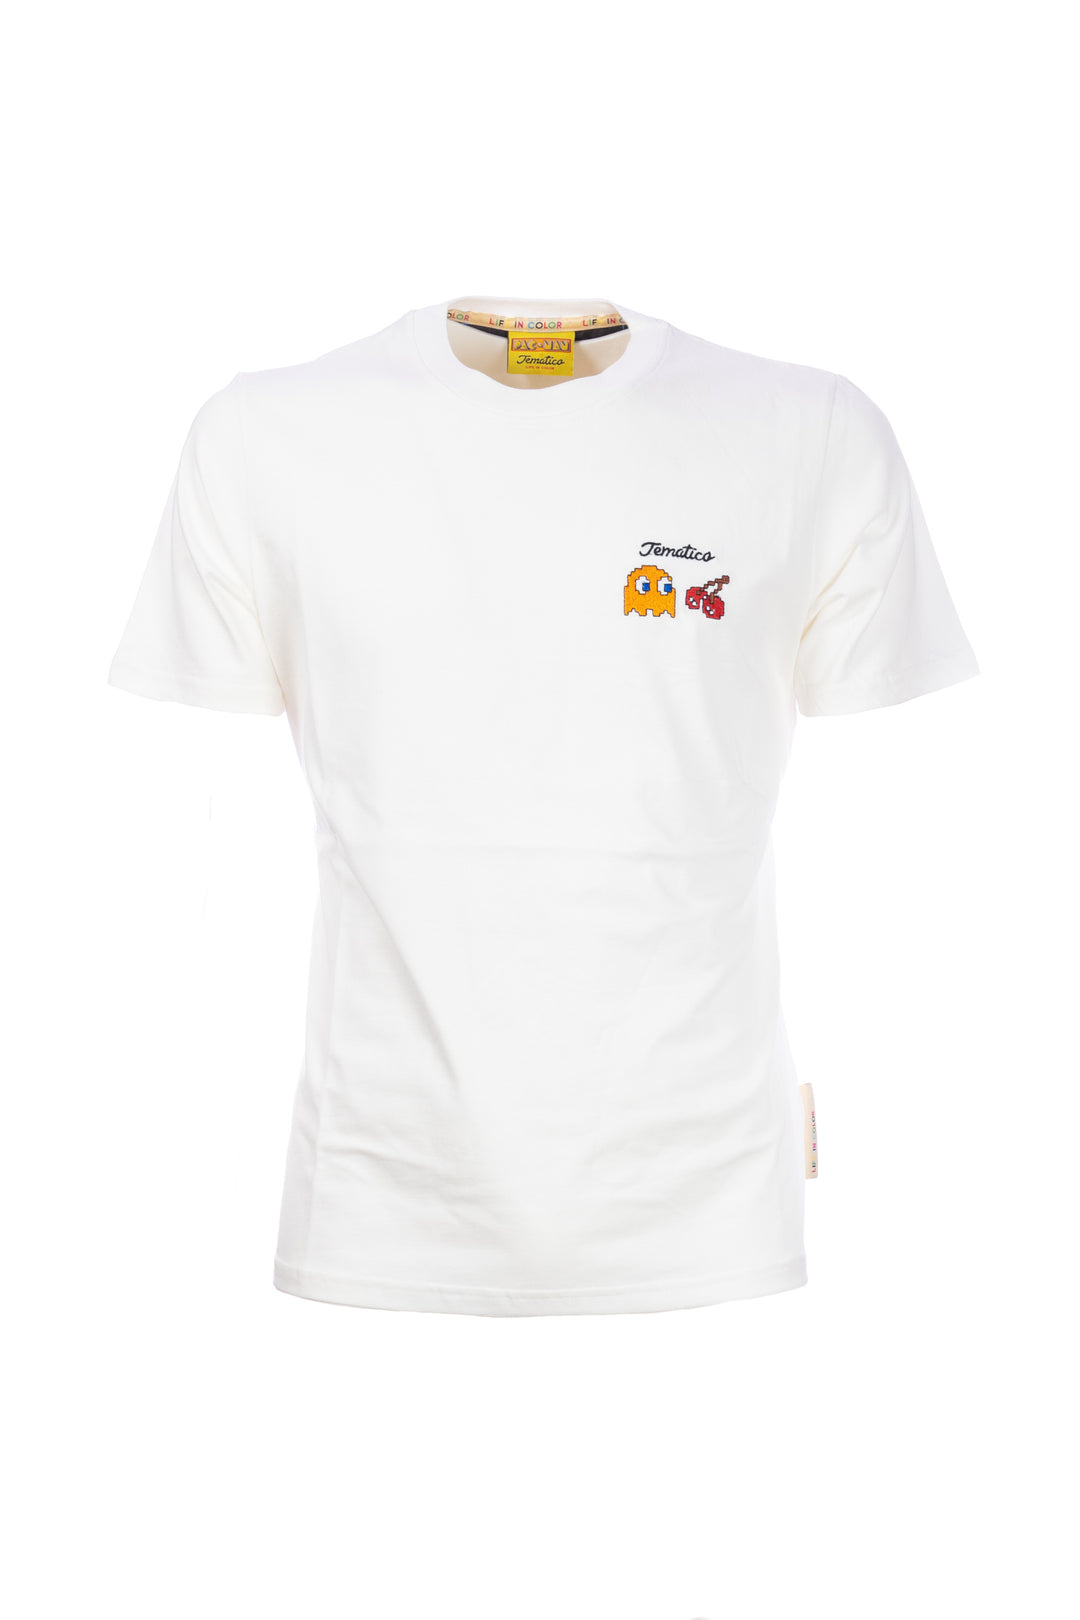 TEMATICO T-shirt panna in cotone con stampa Pac-Man sul petto e sulla schiena - Mancinelli 1954